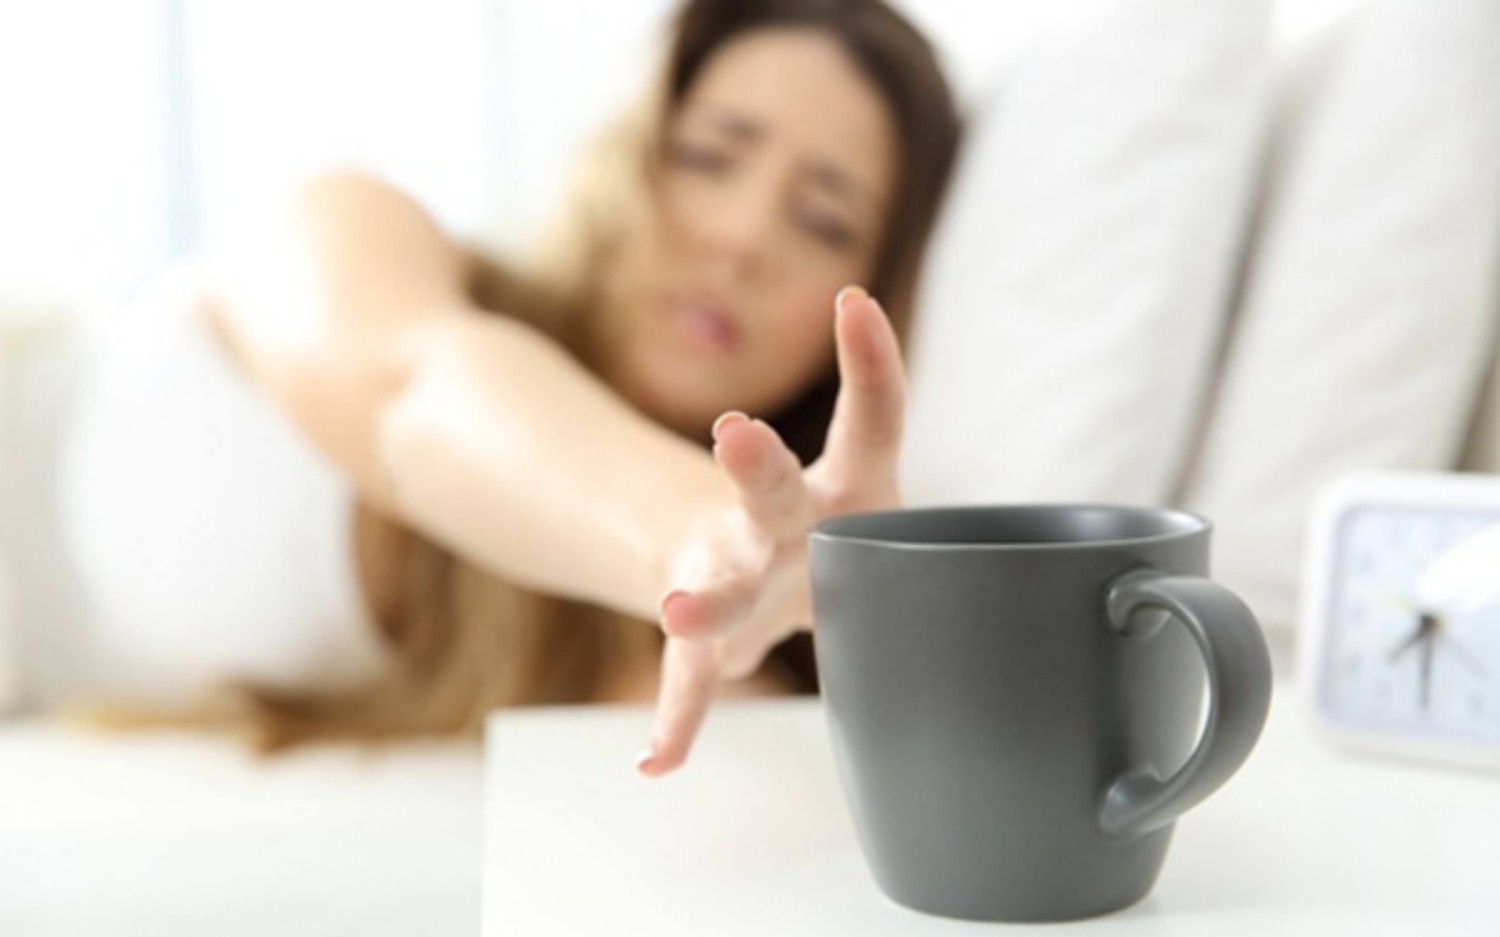 8 dấu hiệu bạn đang nghiện caffeine và khi nào nên đến gặp bác sĩ?